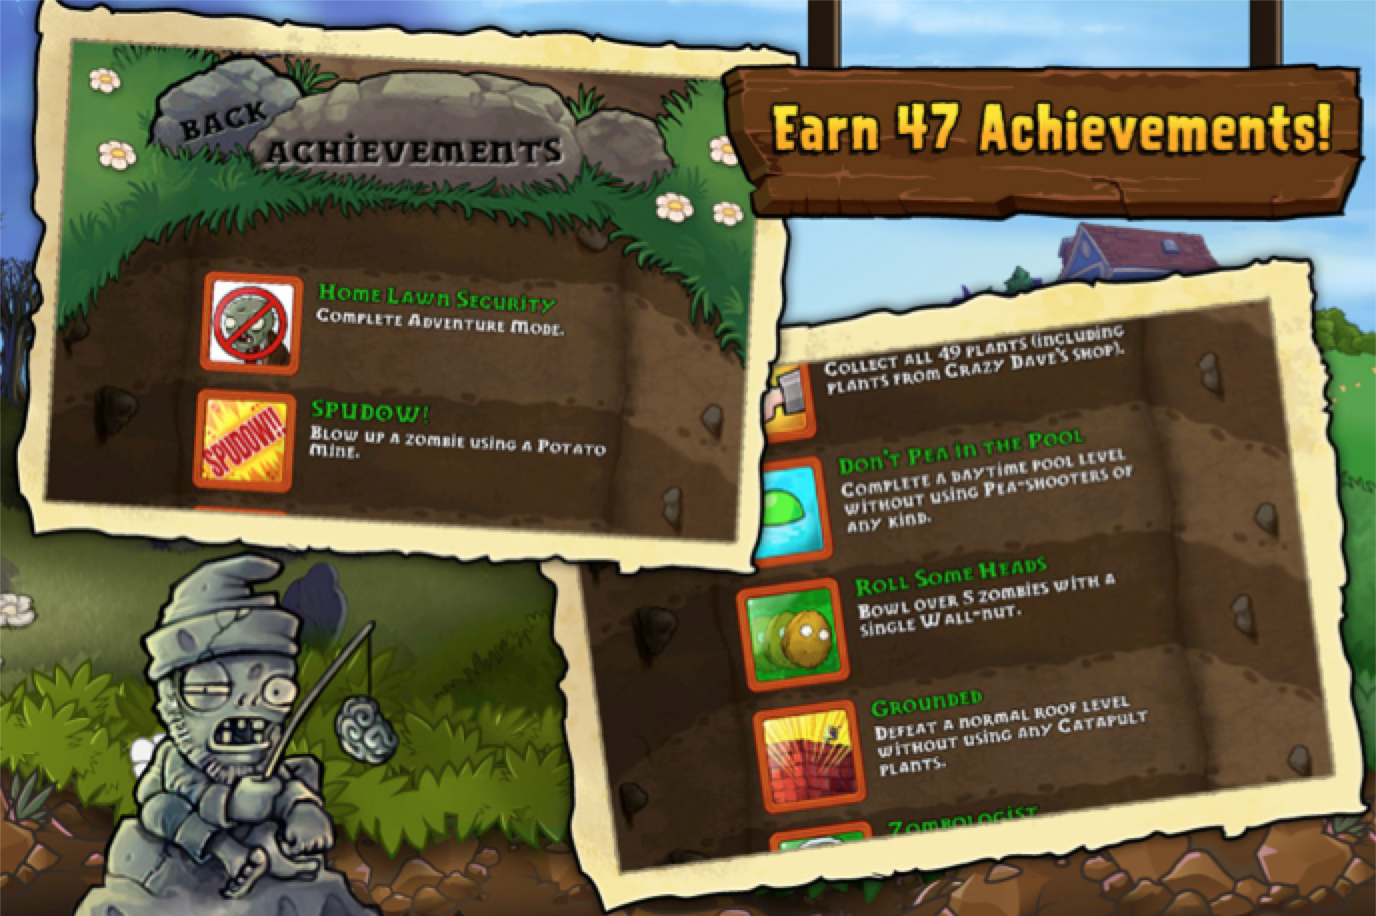 Imagen 3. Captura de pantalla del videojuego Plantas vs.Zombies elaborado por PopCap Games.